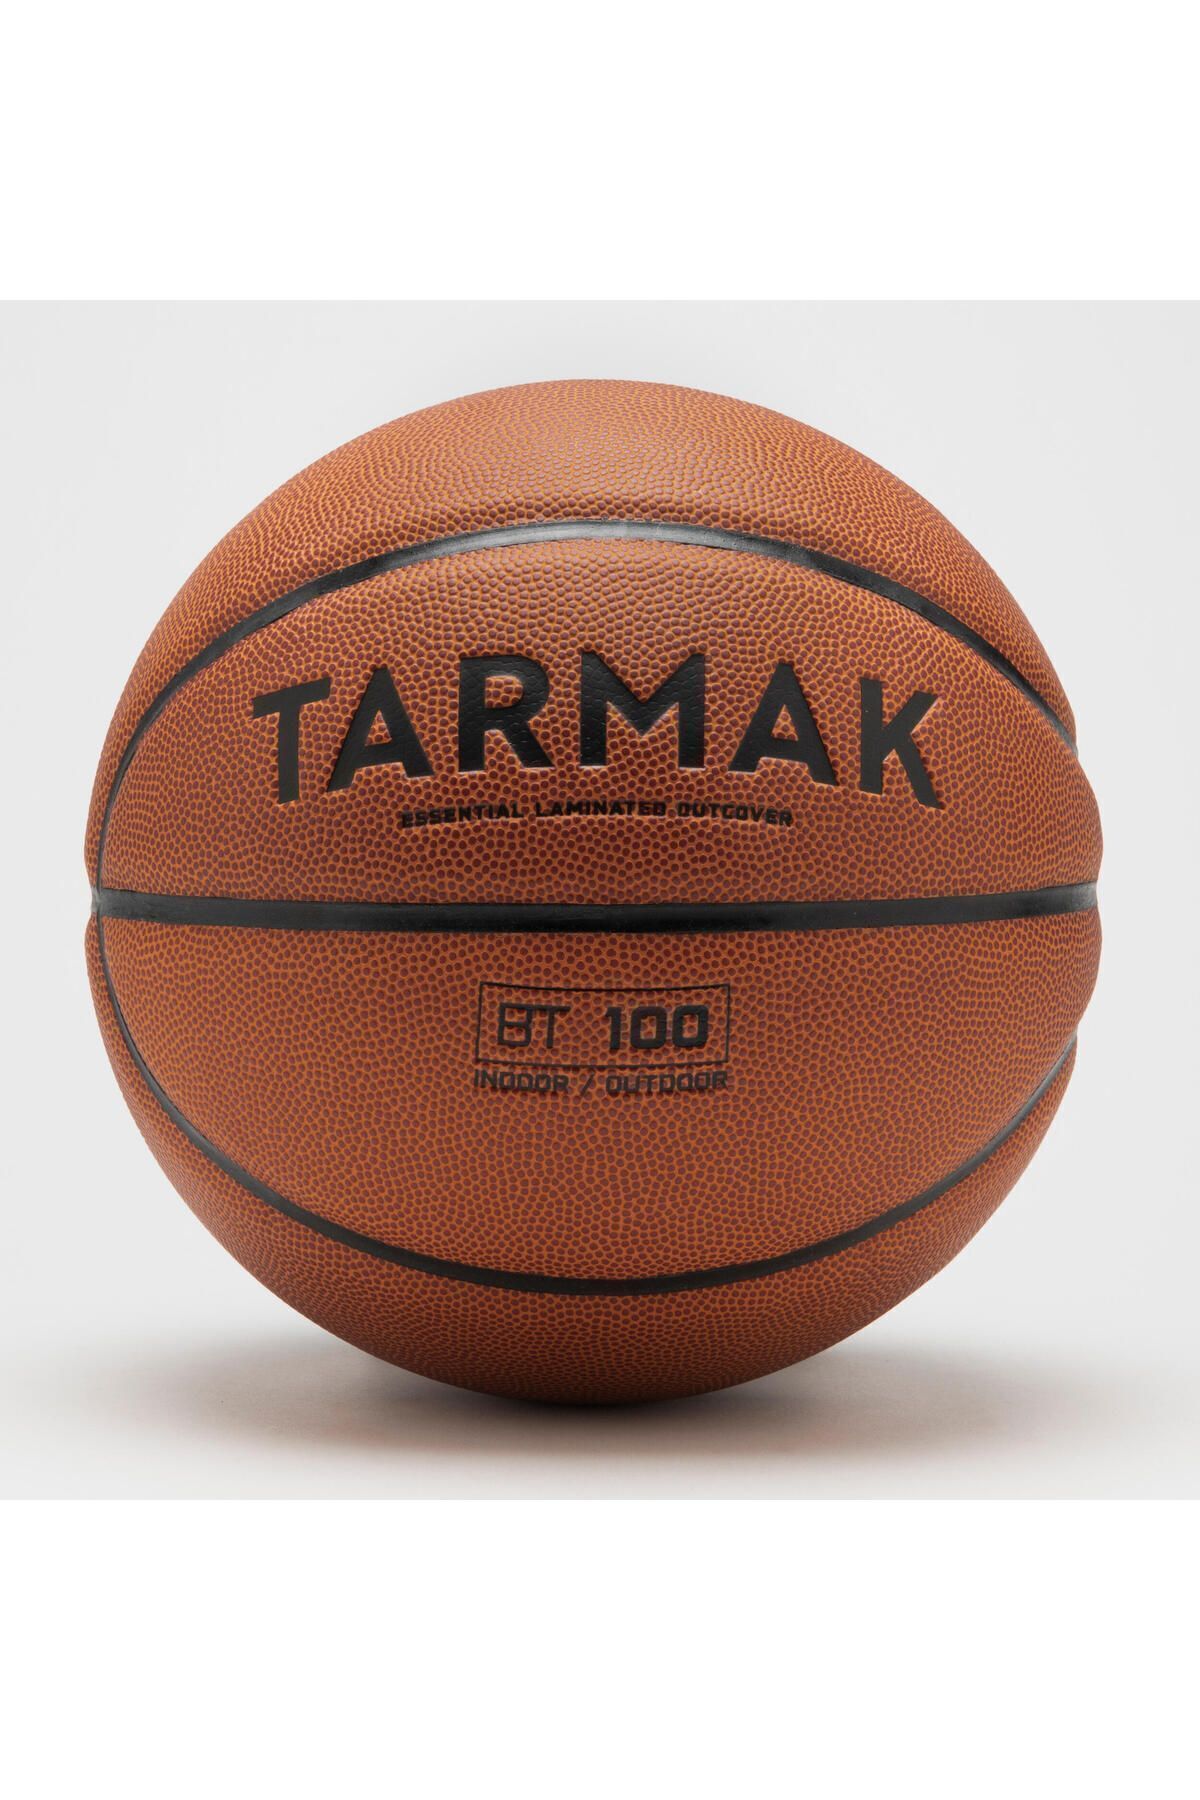 Decathlon Basketbol Topu - 5 Numara - Turuncu - BT100